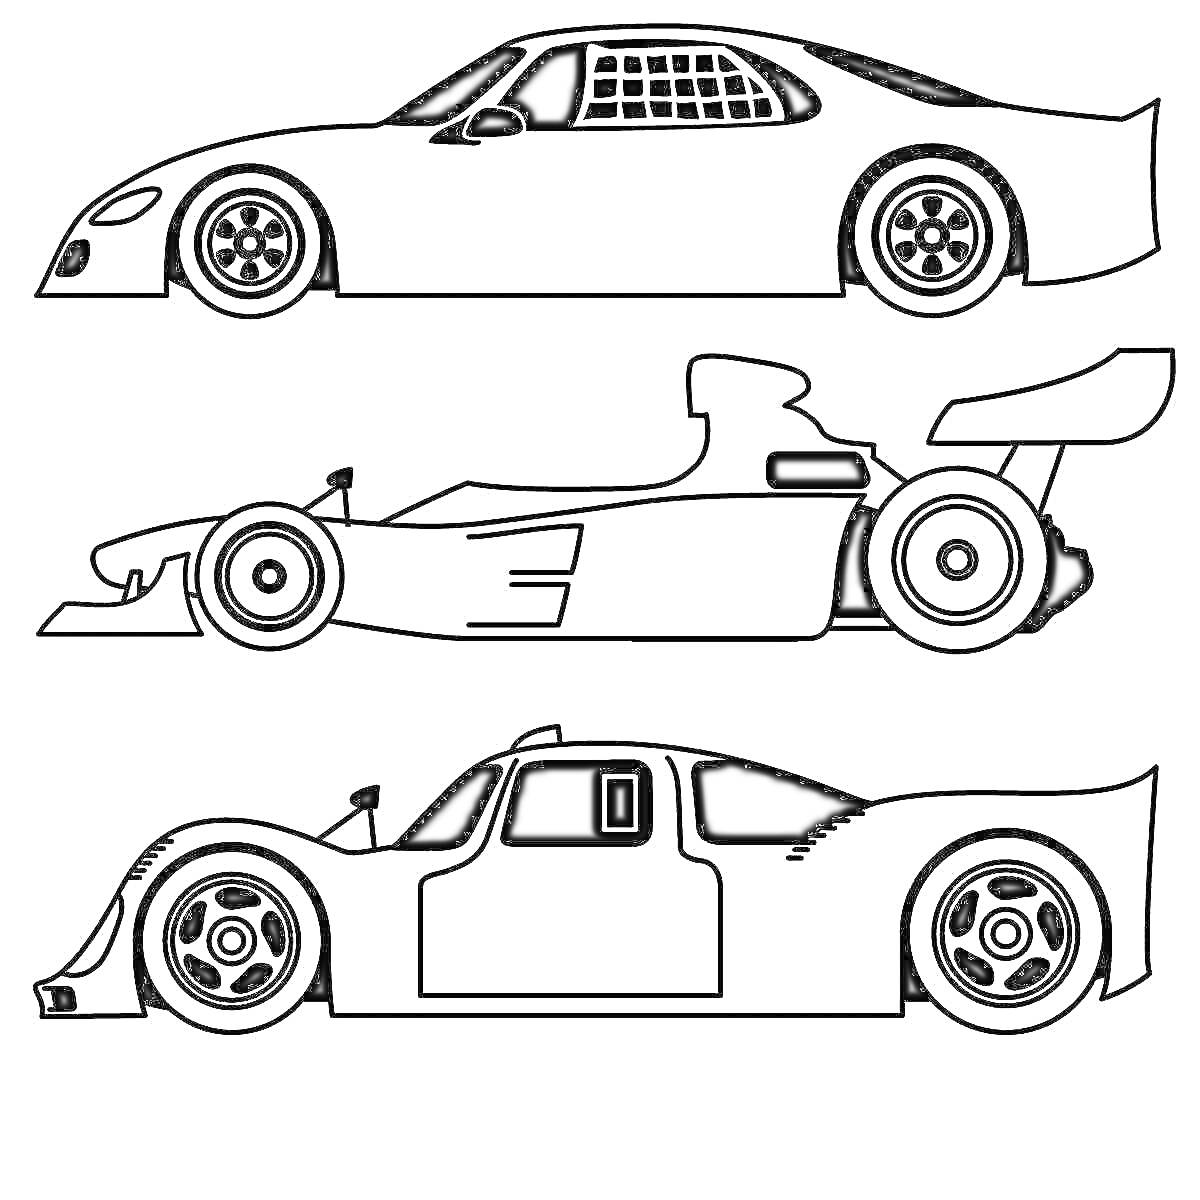 Раскраска Три гоночных автомобиля (гладкий гоночный автомобиль, автомобиль Формулы-1, спортивный автомобиль с дверьми)